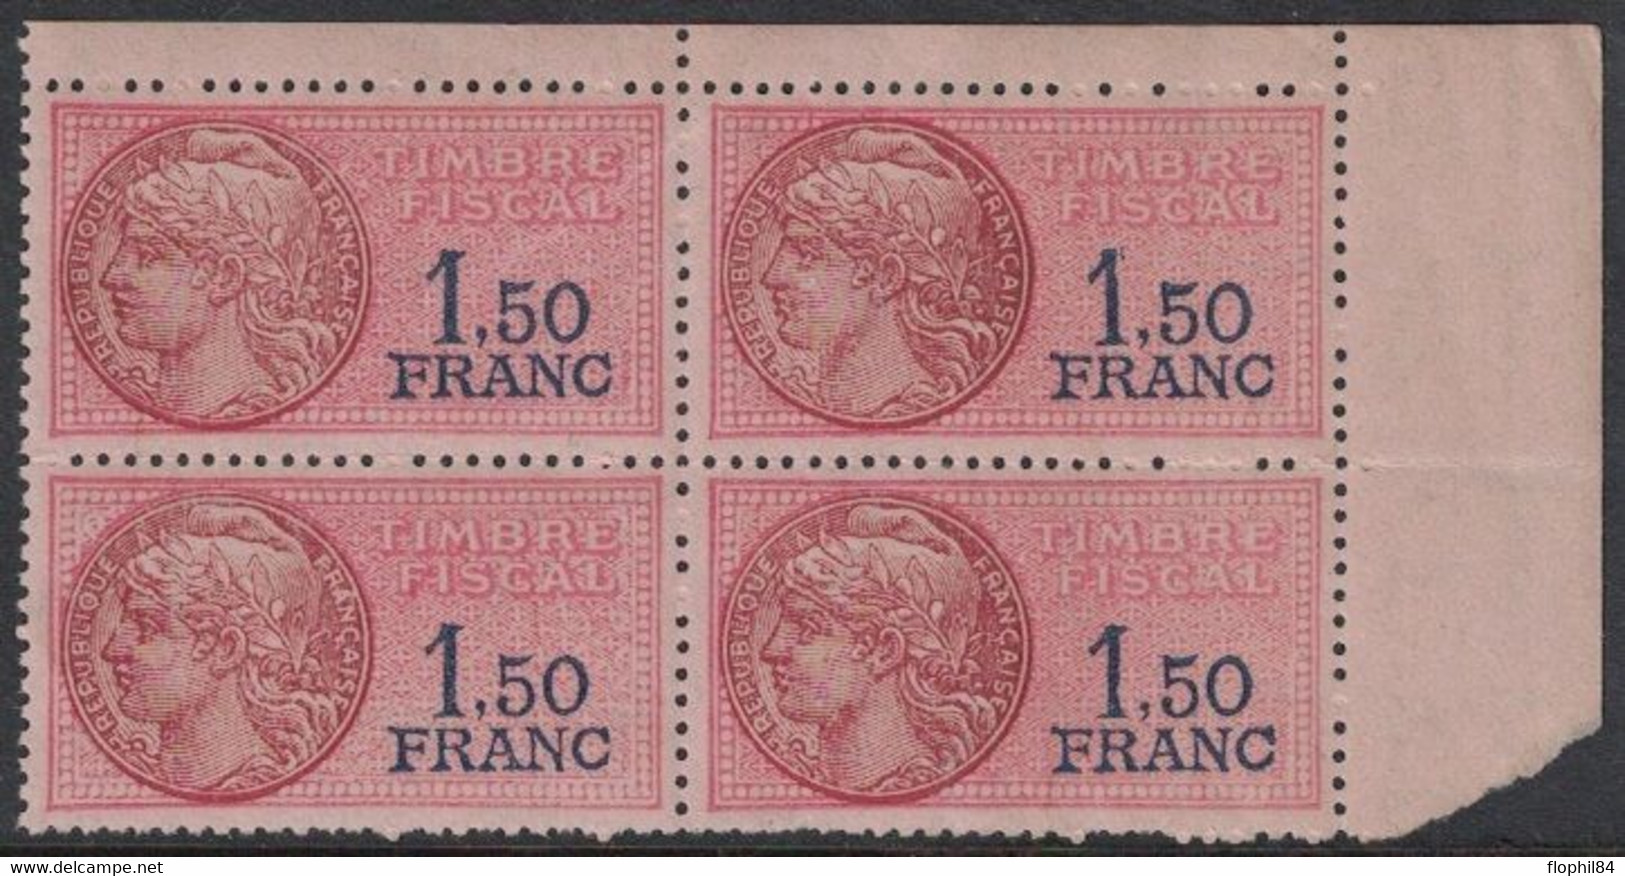 TIMBRE MOBILE - FISCAUX GENERAUX - N°124 - BLOC DE 4 ANGLE HAUT DE FEUILLE NEUF AVEC GOMME SANS TRACE - COTE 12€. - Stamps